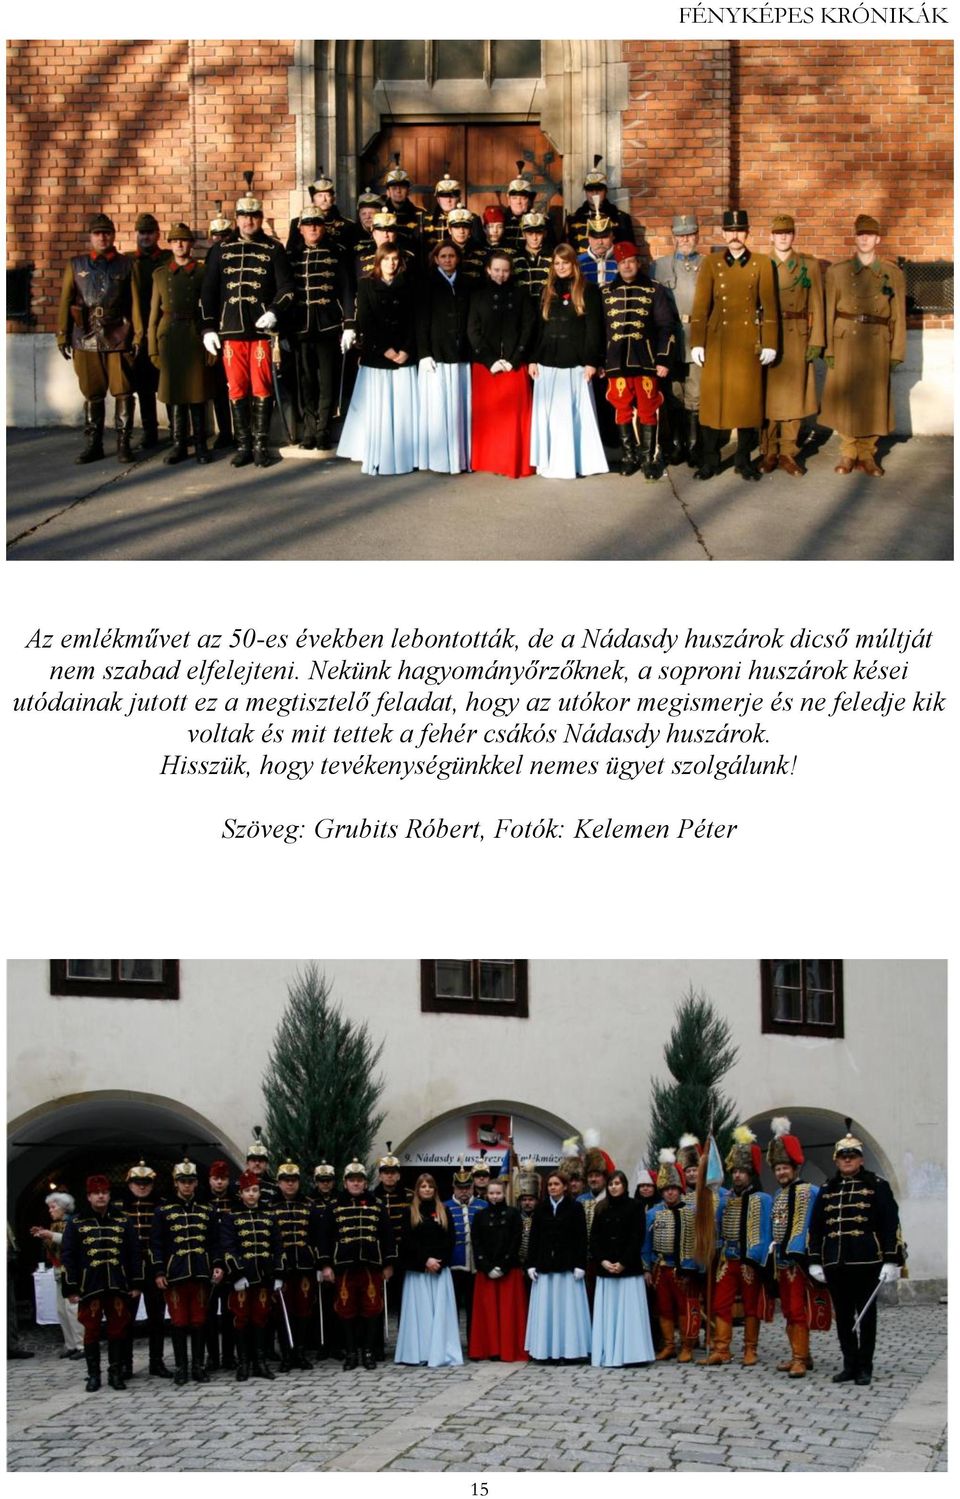 Nekünk hagyományőrzőknek, a soproni huszárok kései utódainak jutott ez a megtisztelő feladat, hogy